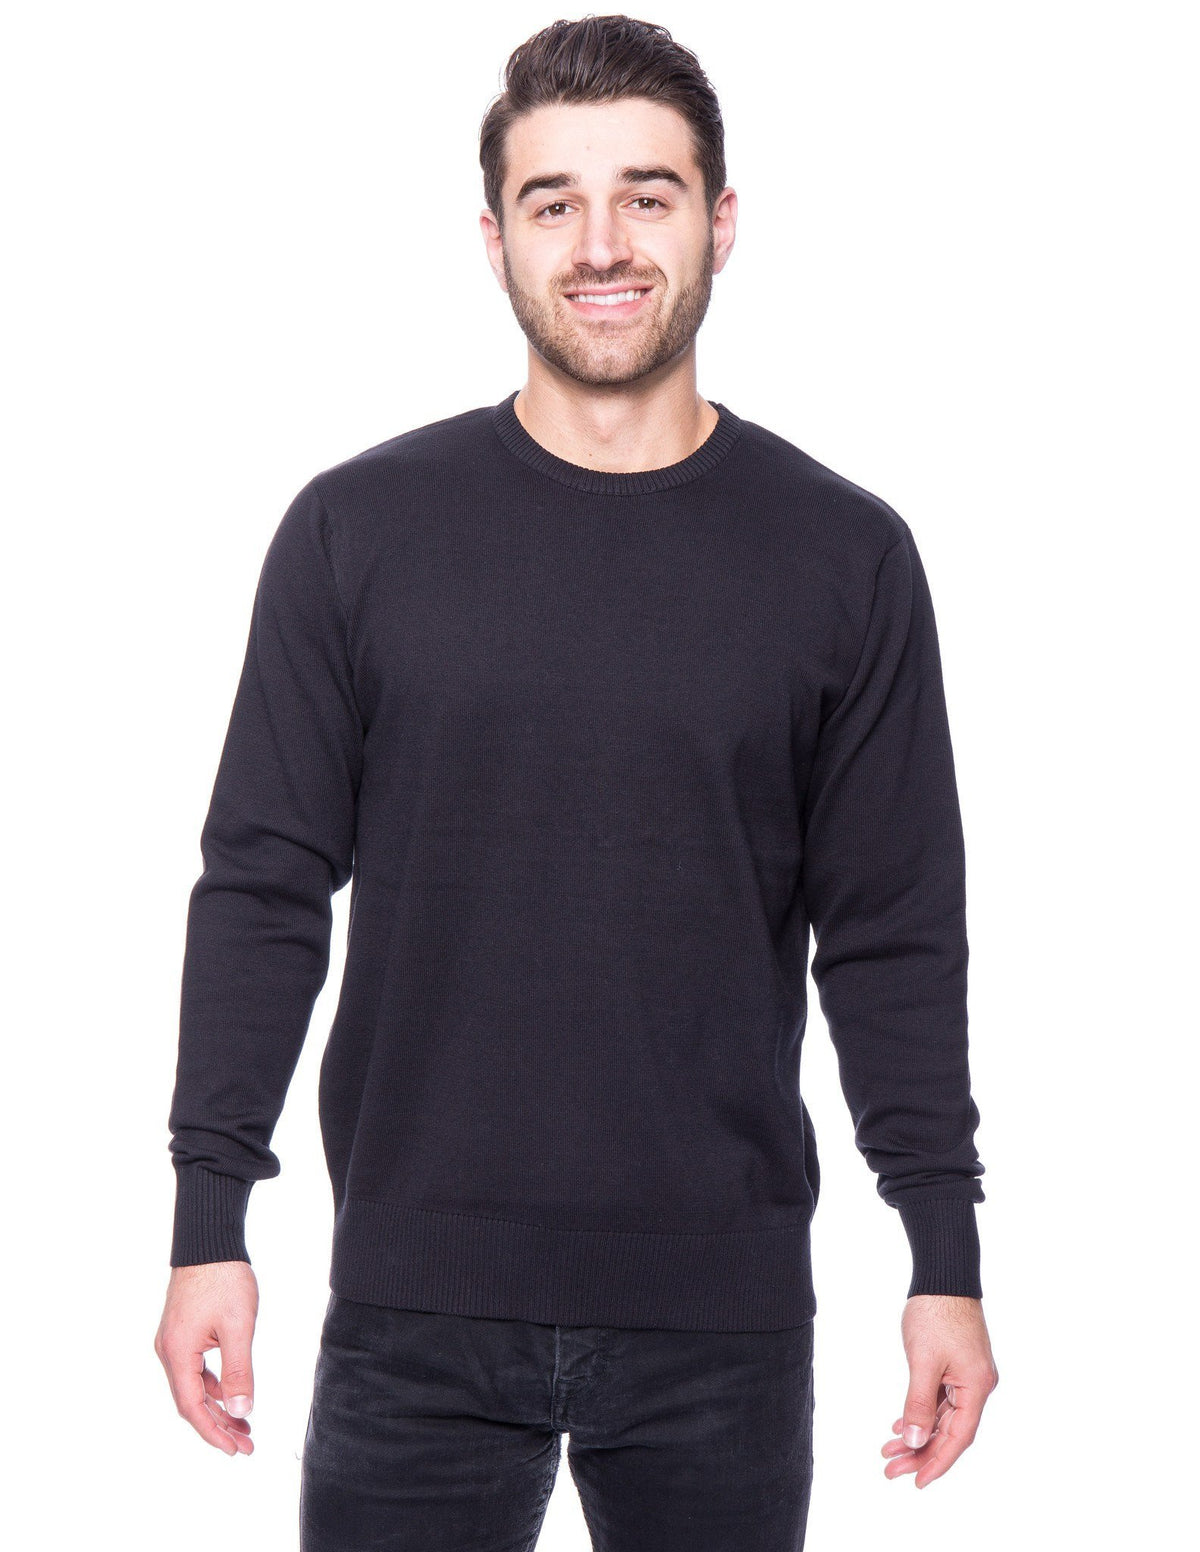 Men's Premium 100% Cotton Crew Neck Sweater - Black